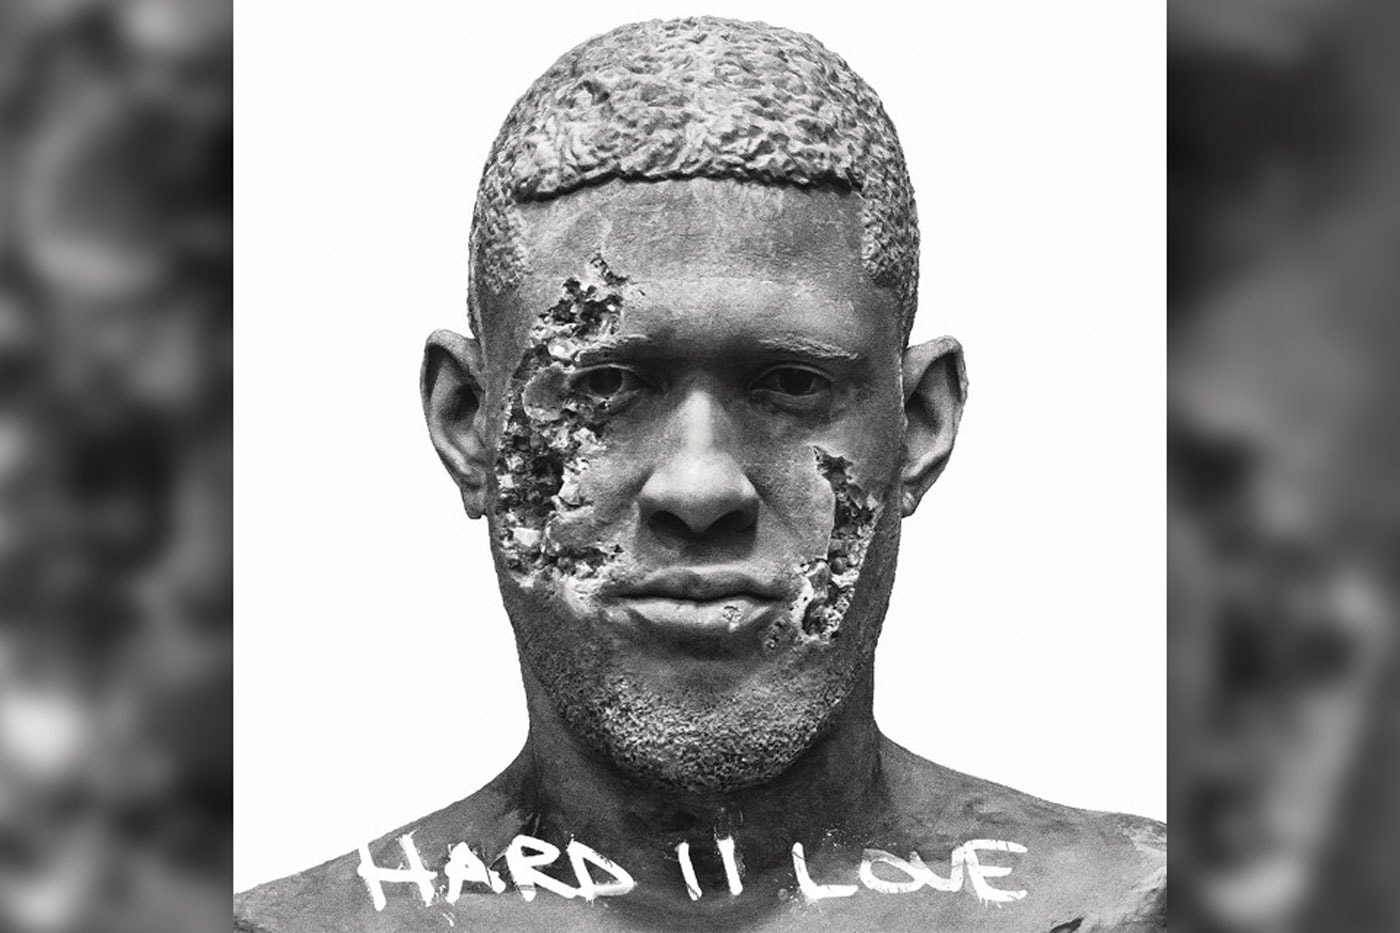 Stream Usher's New Album, 'Hard II Love'